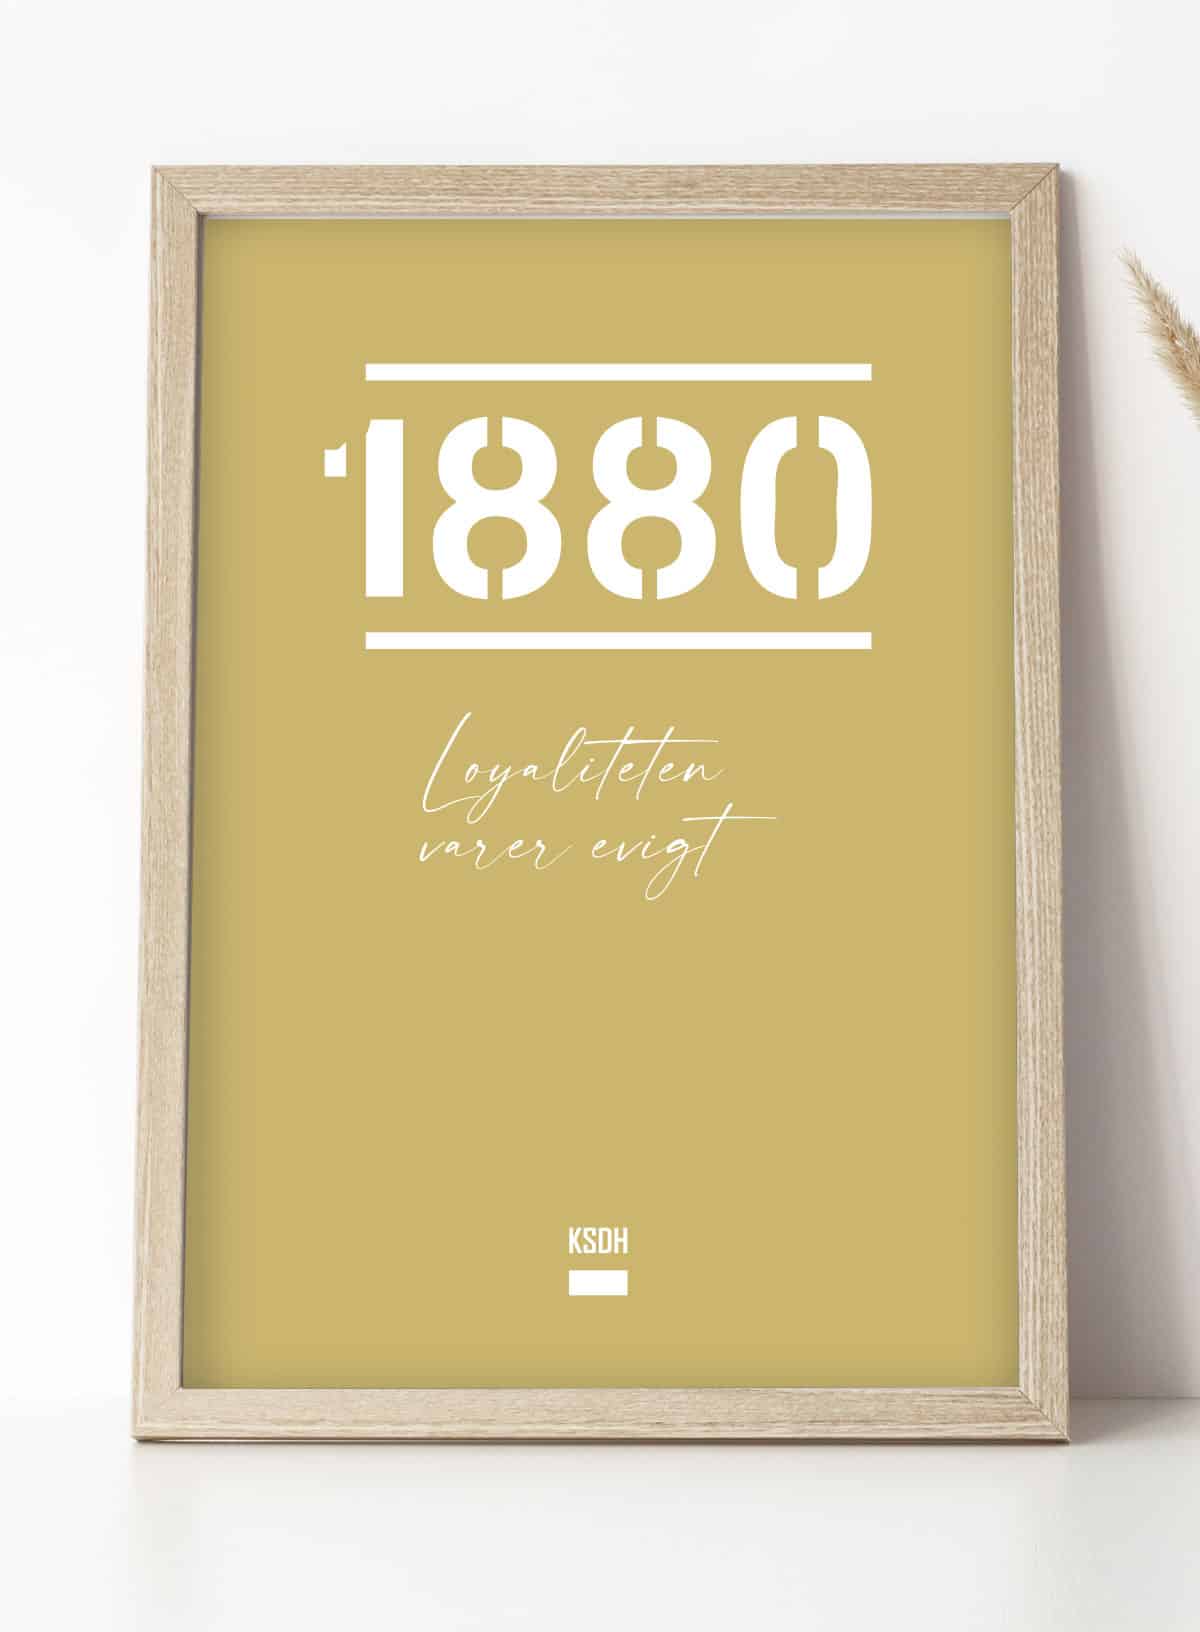 Se AGF-plakat - 1880 - Loyaliteten varer evigt - 50 x 70 cm - Kr. 279,- hos Detbedstehjem.dk